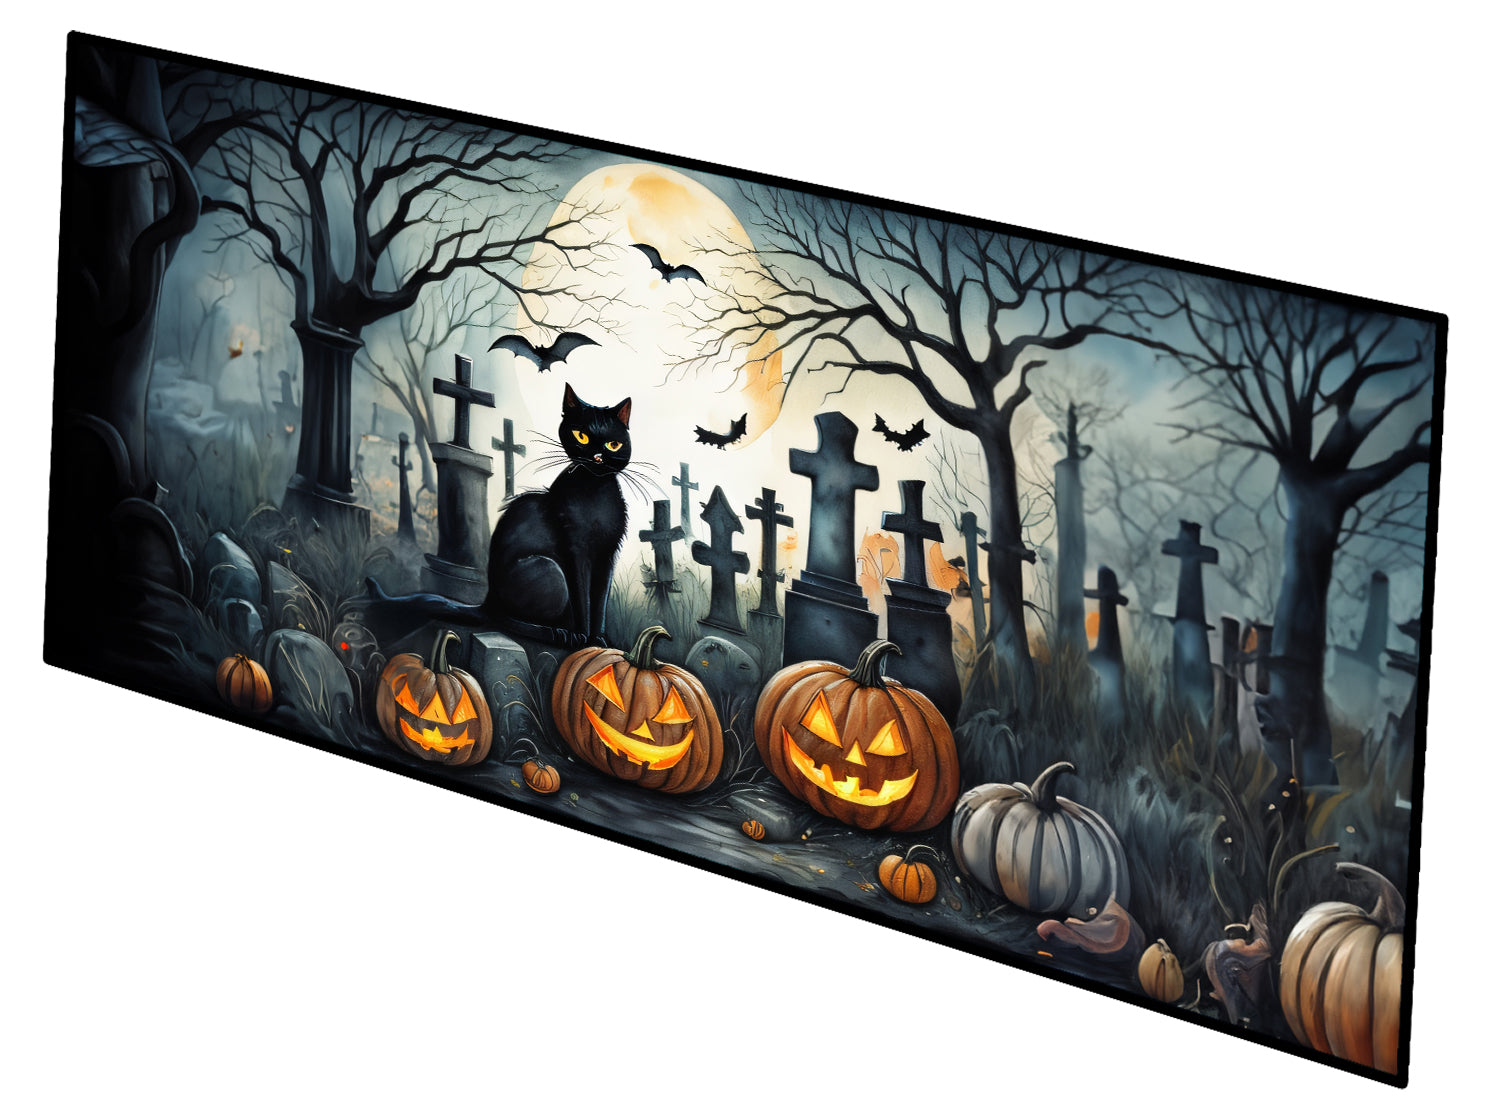 Buy this Black Cat Spooky Halloween Indoor / Outdoor Runner Mat 28x58